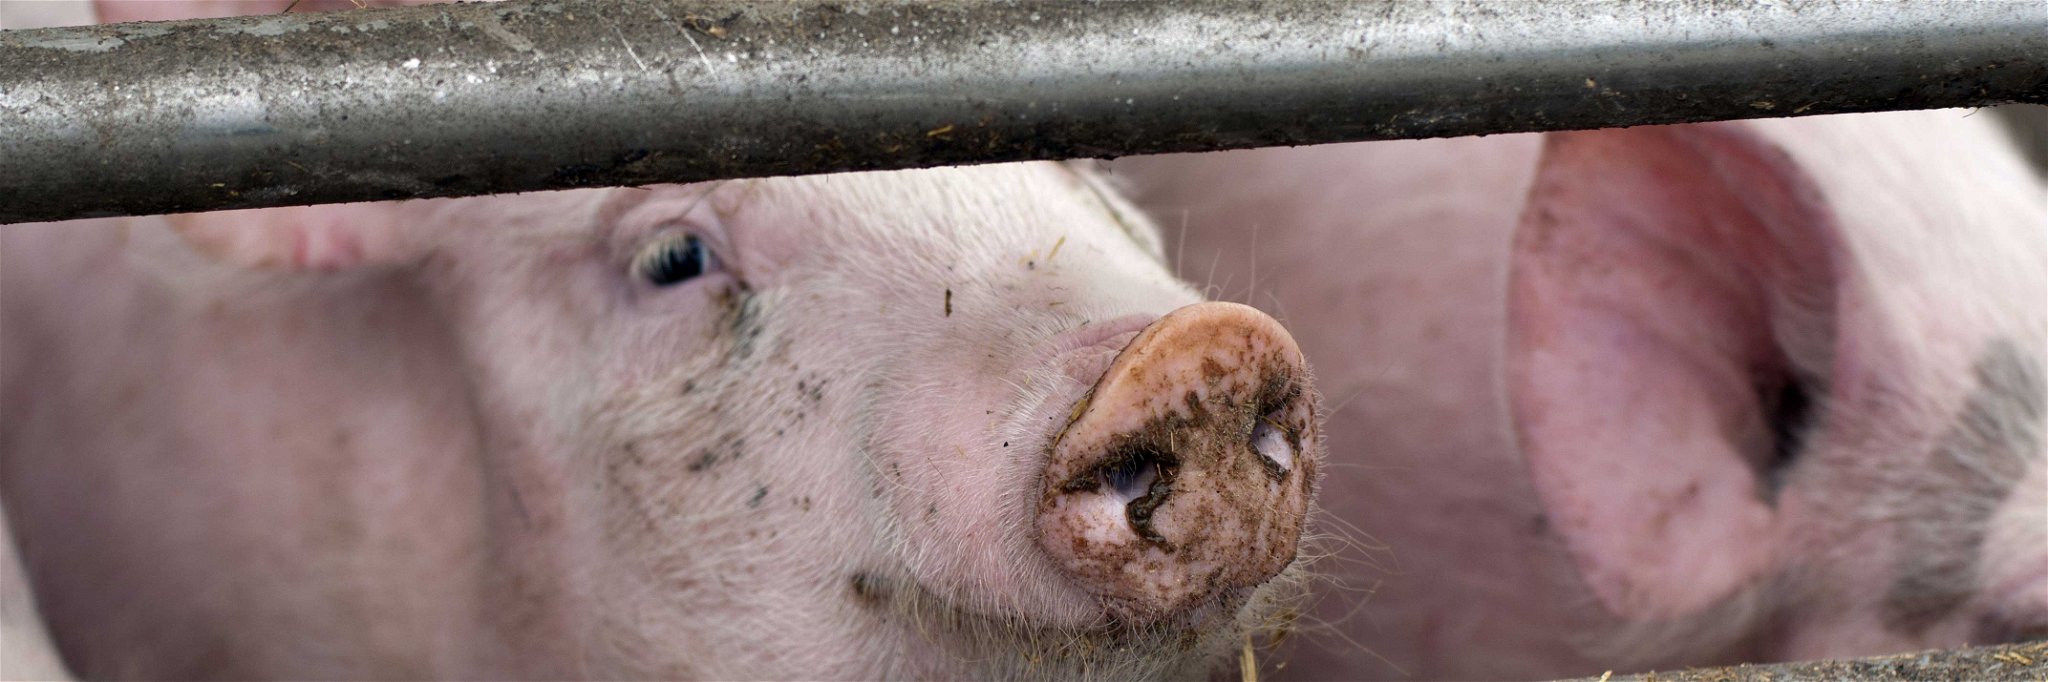 Allein Schweinefleisch konsumieren die Österreicher im Schnitt über 35 Kilogramm jährlich.